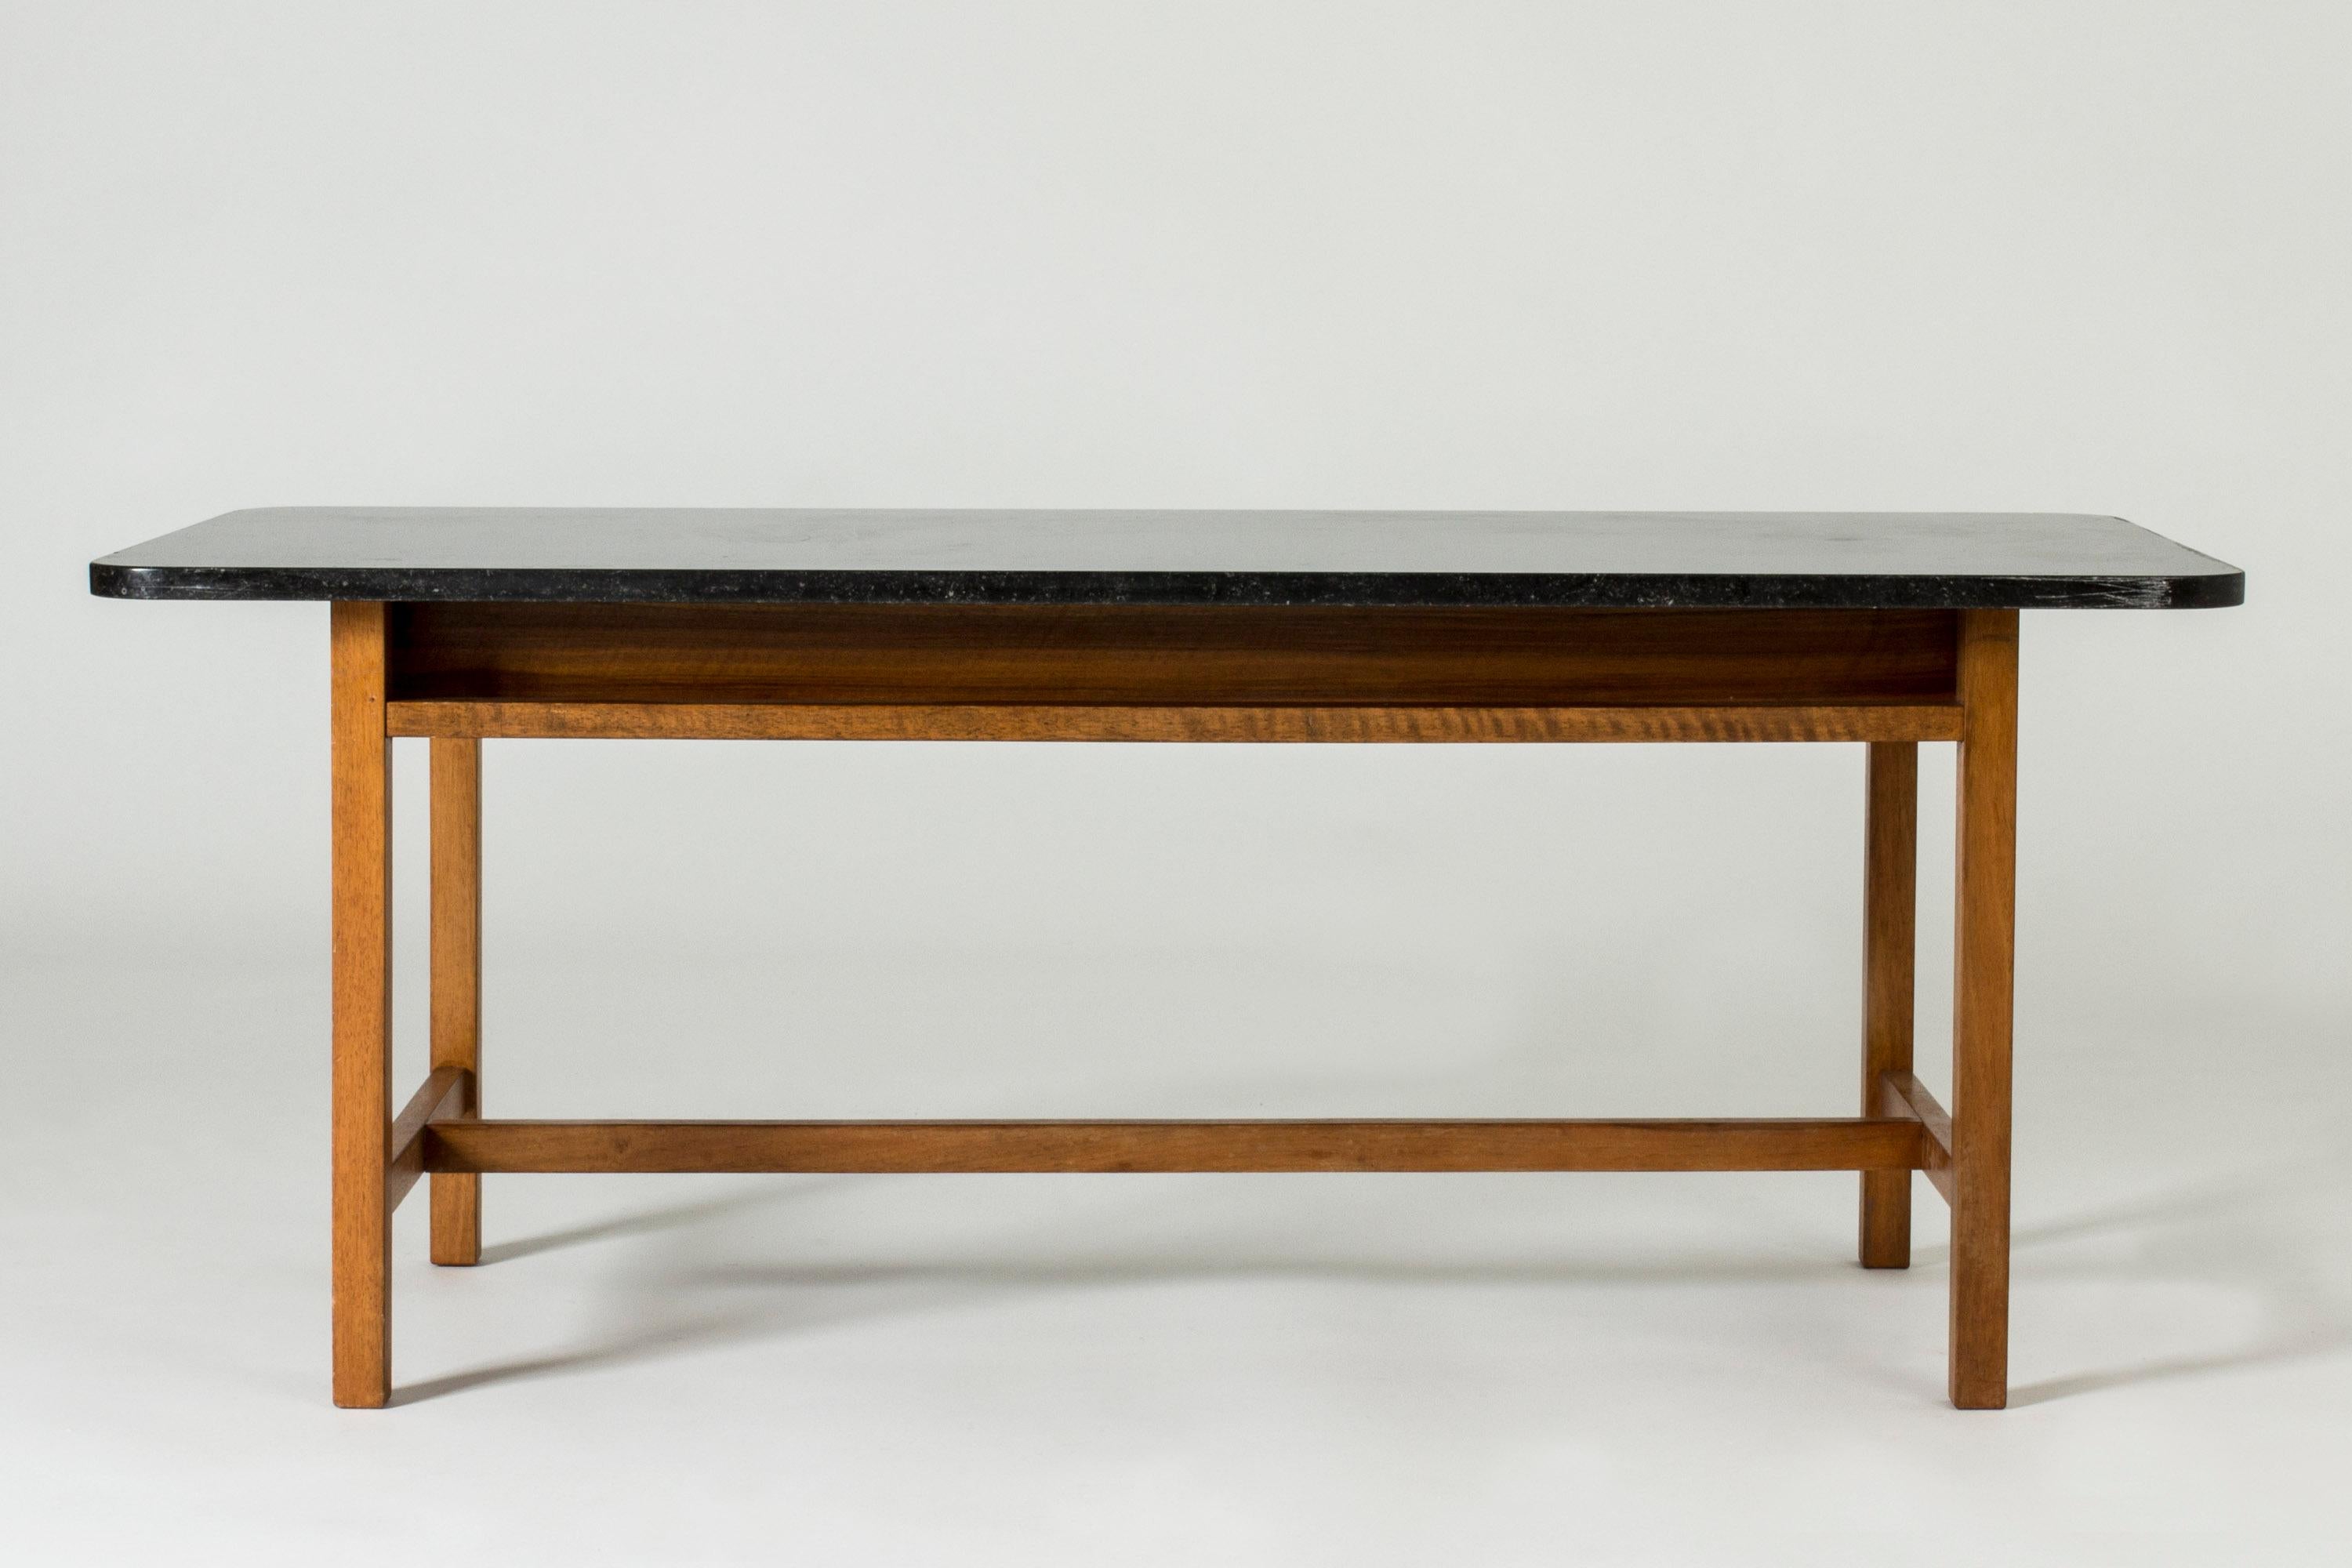 Élégante table basse de Josef Frank, avec une base en acajou et un plateau en marbre noir. La base élégante et légère contraste avec le haut lourd. Coins arrondis.